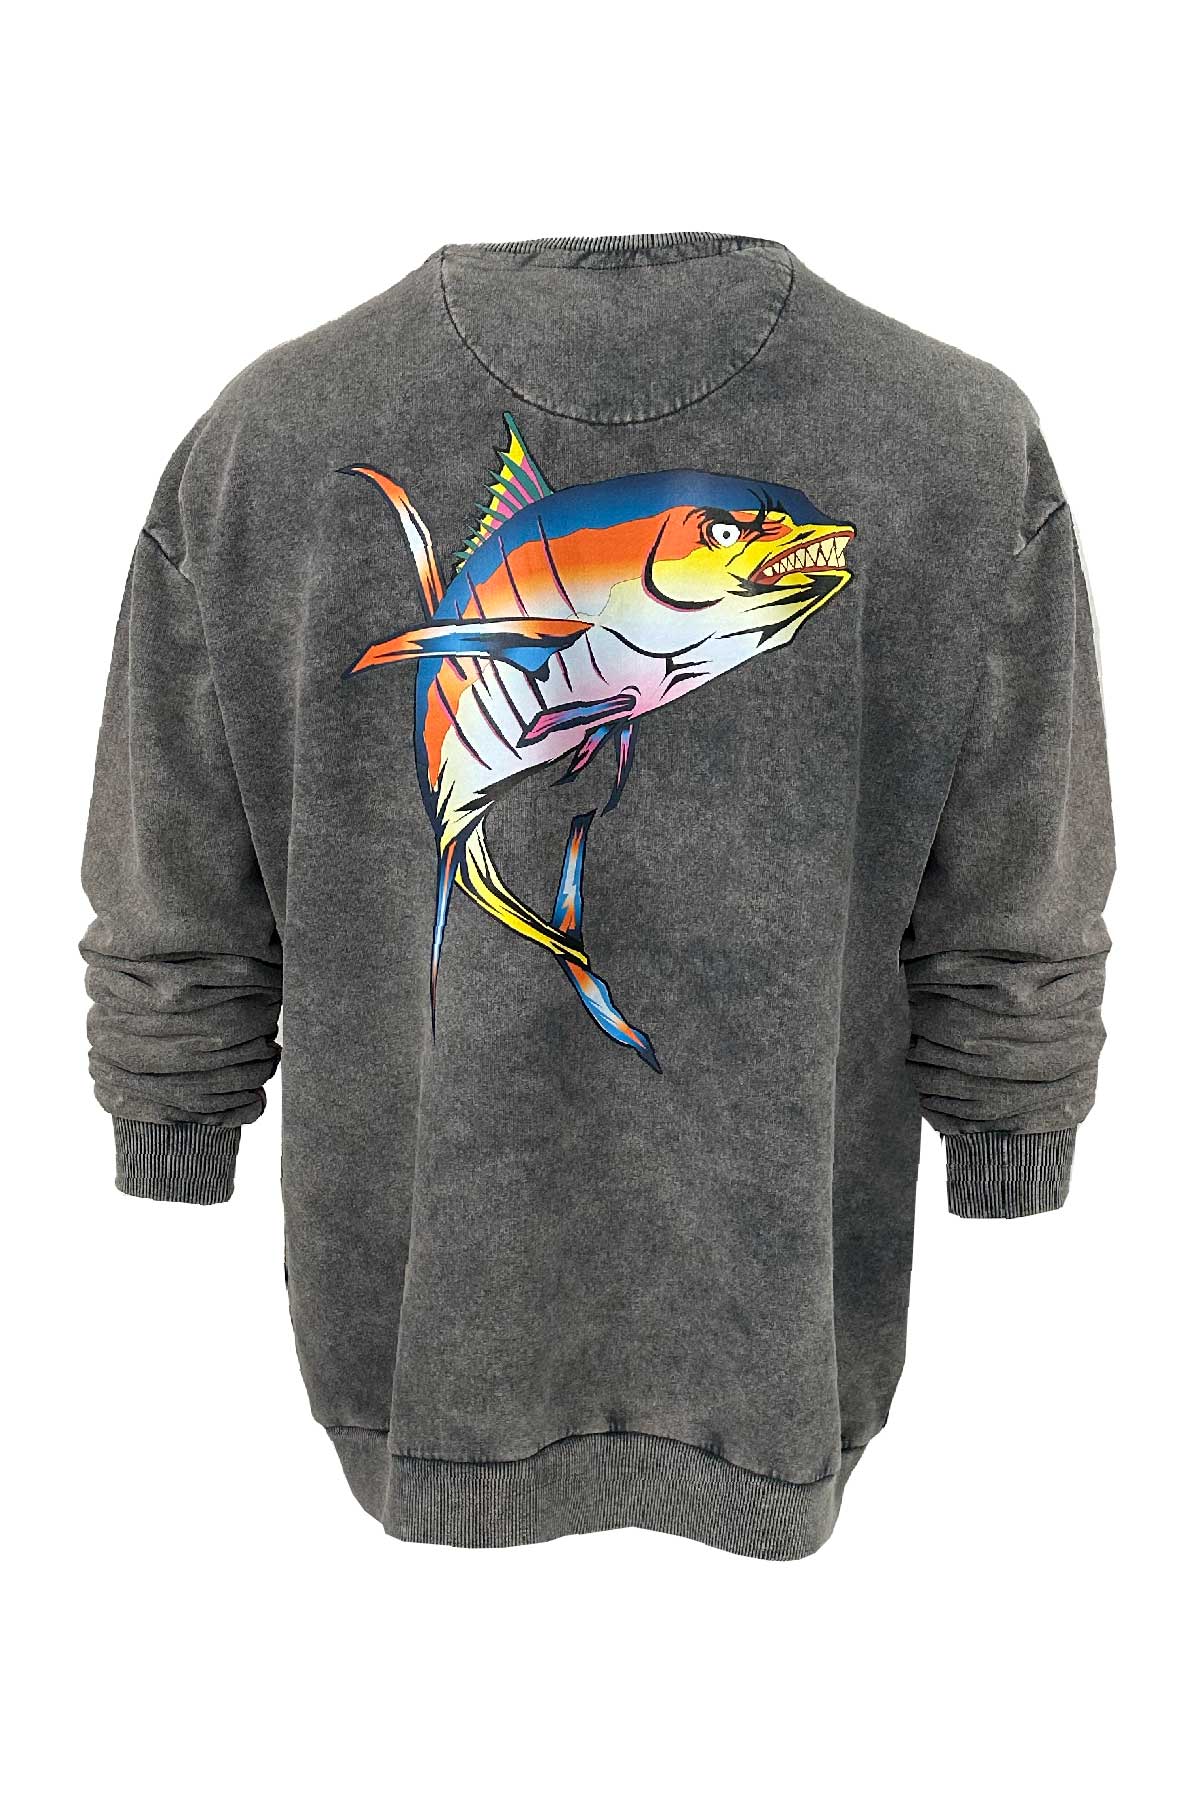 Old Bastard Unisex Crew Neck Long Sleeve Acid Wash Tuna Fish Patterned Grey Sweatshirt